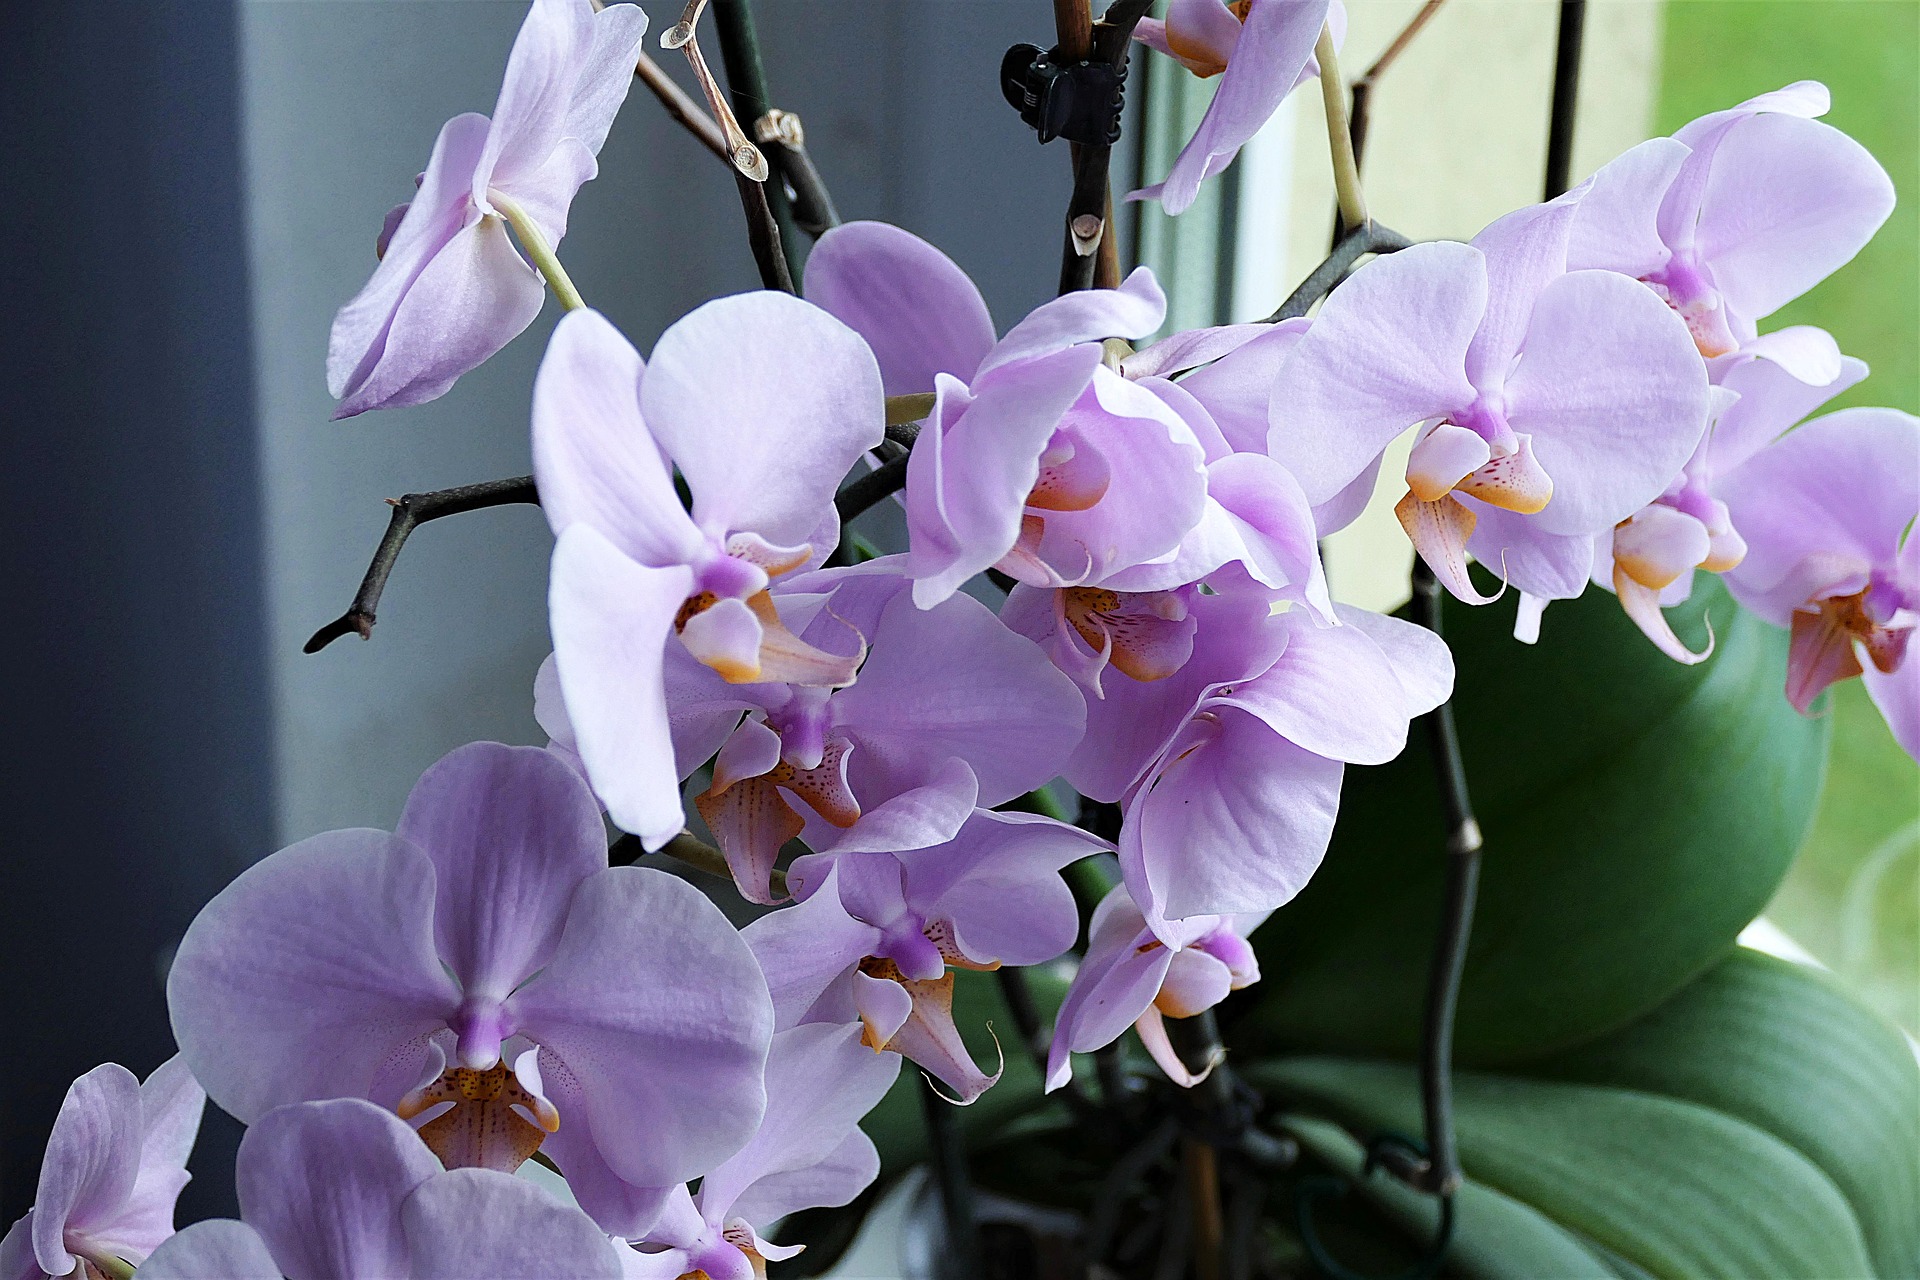 riega tus orquídeas sin dañarlas con nuestros trucos de jardinería